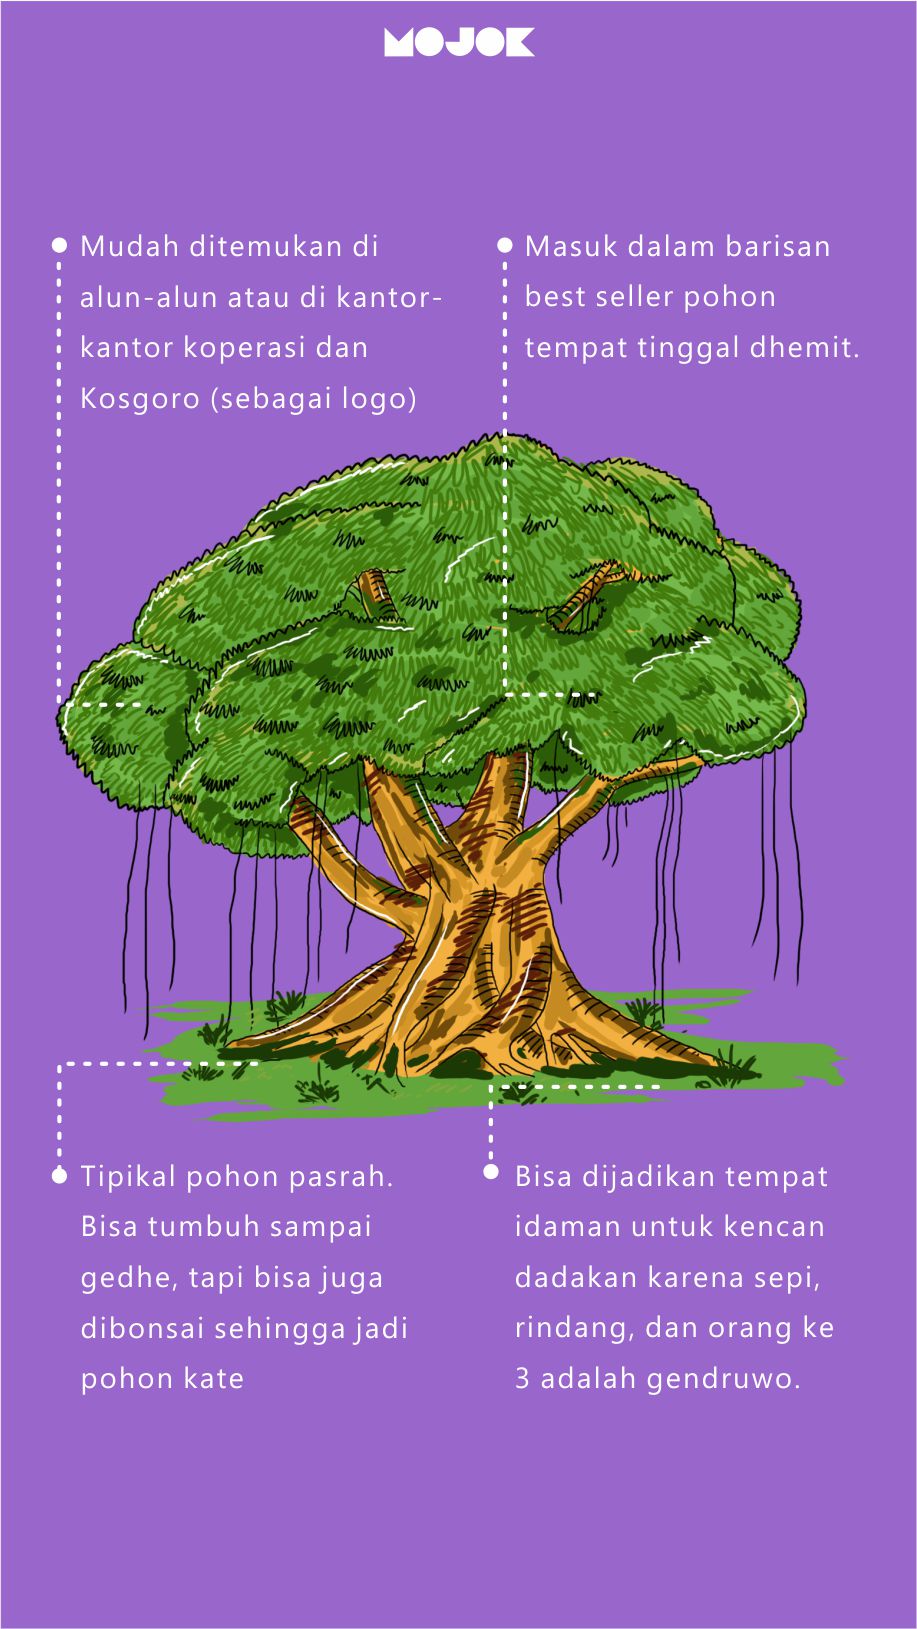 Pohon beringin